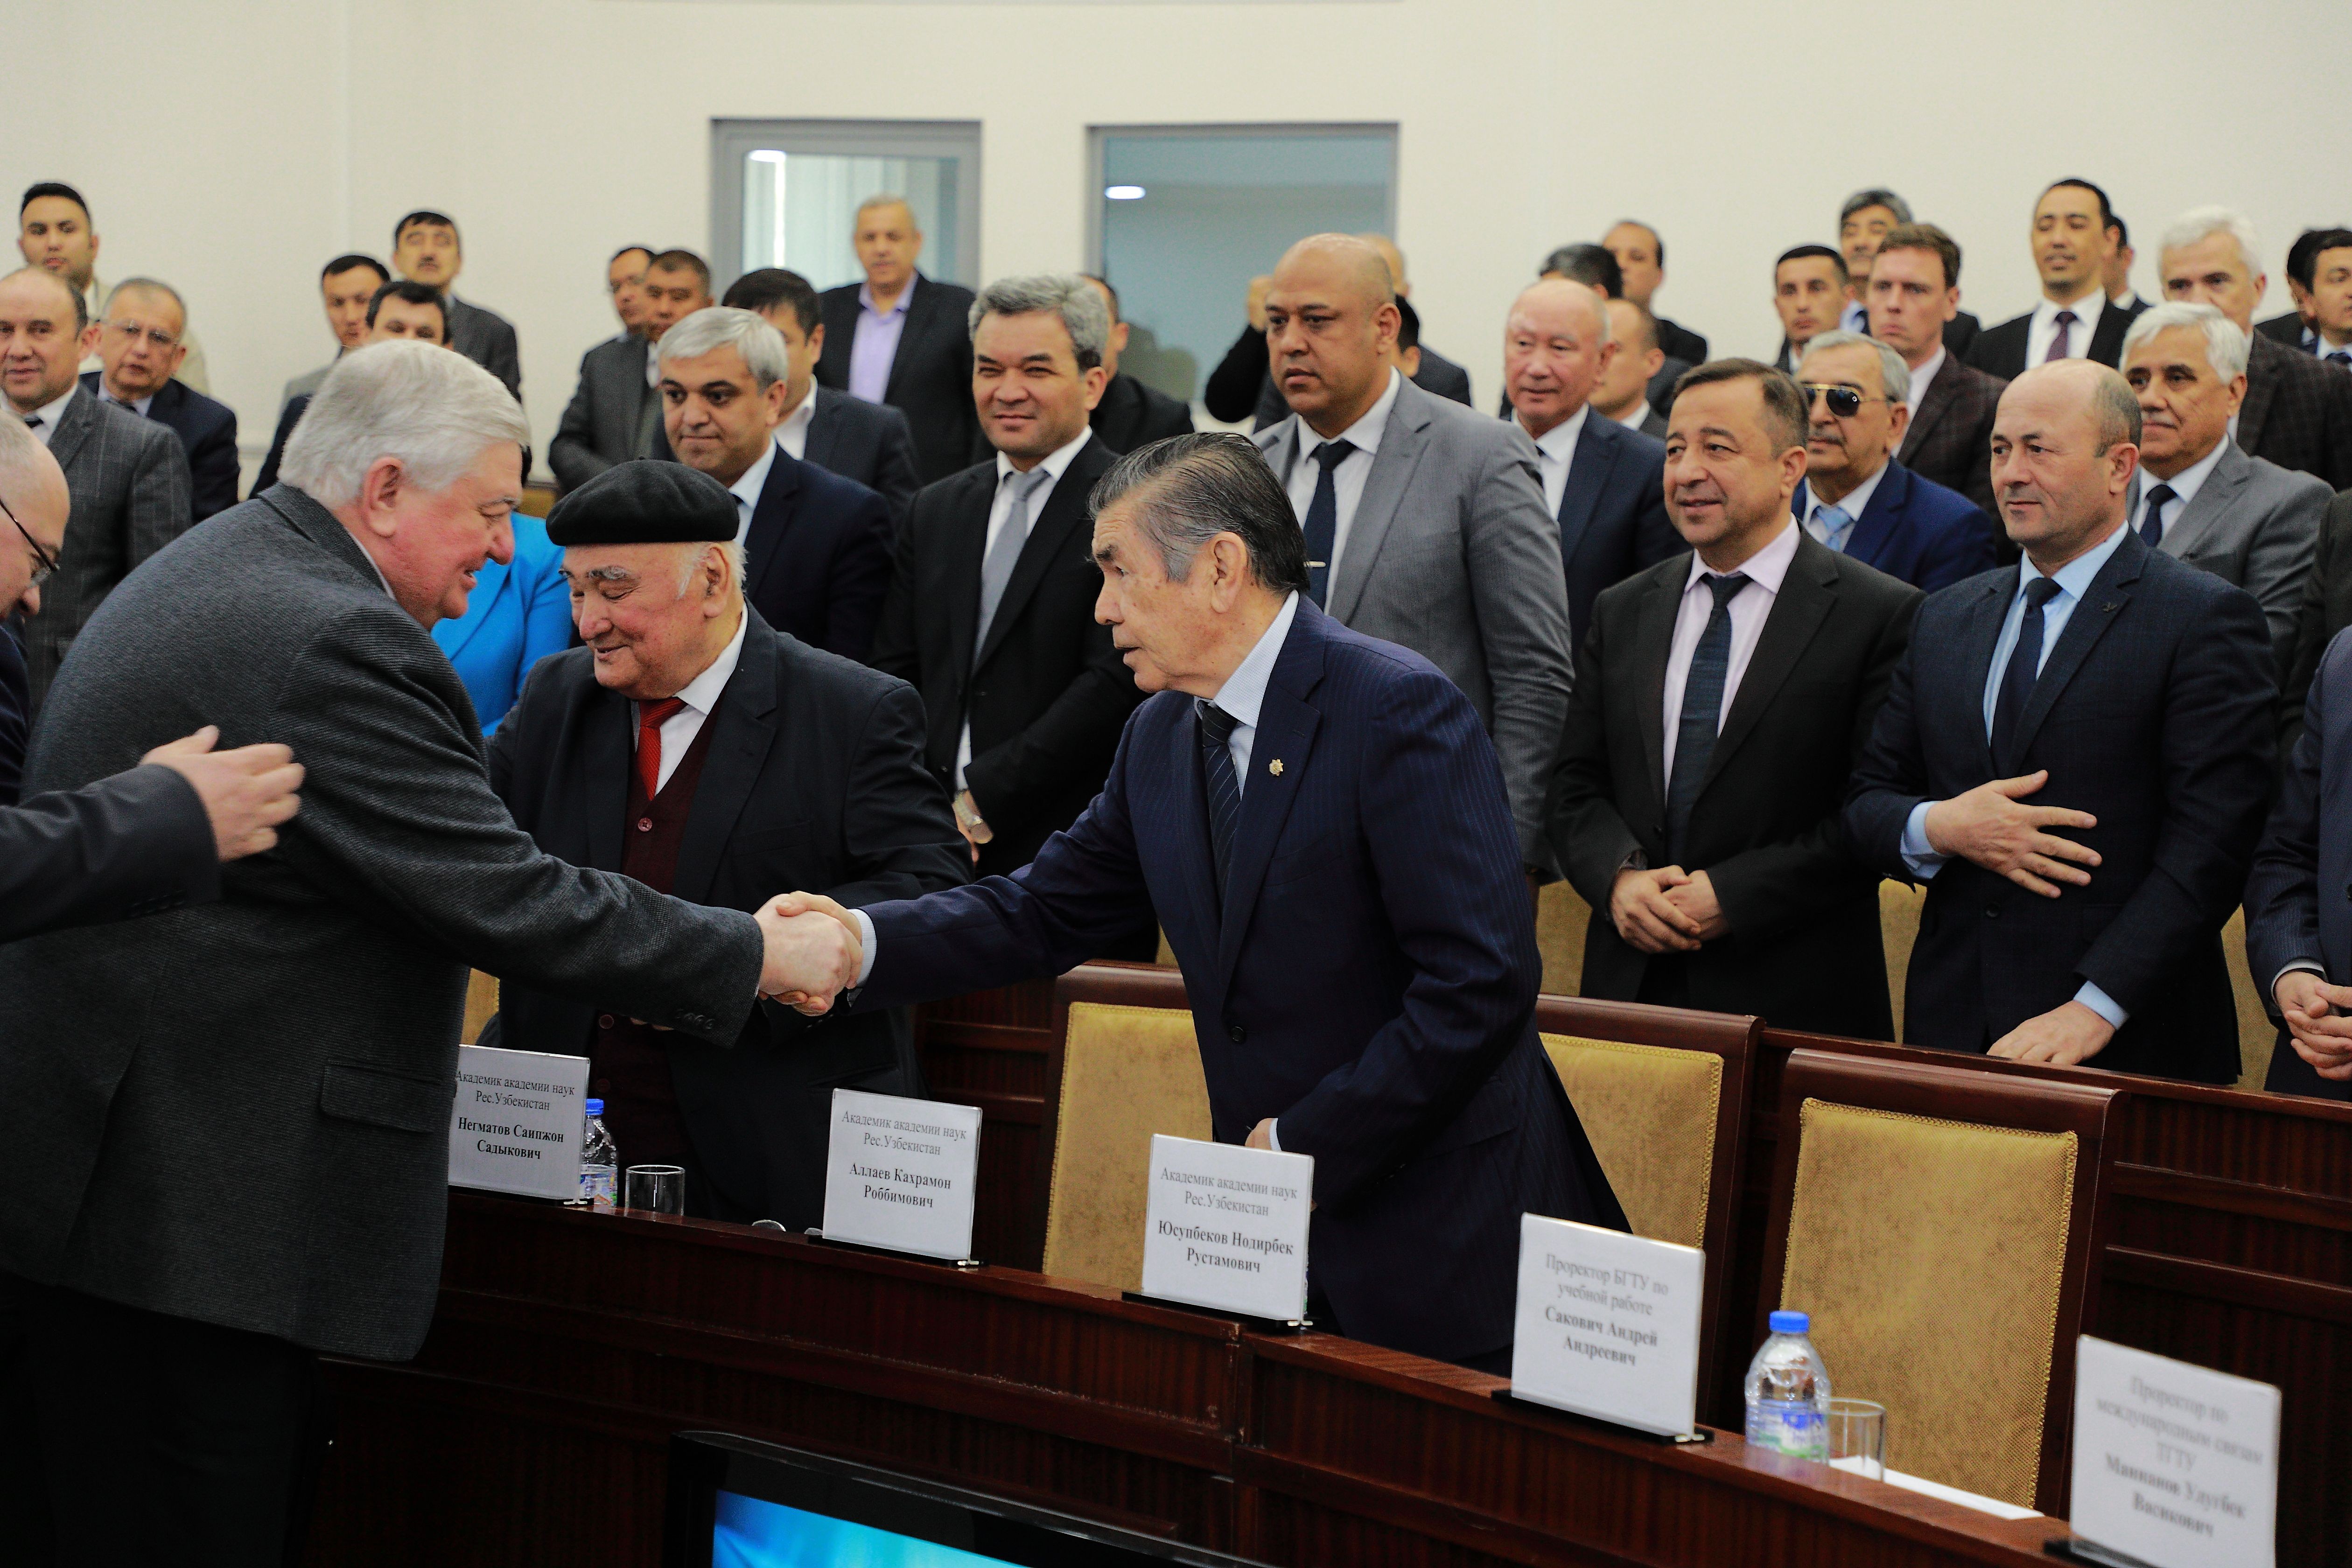 Итоги визита делегации БГТУ в учреждения высшего образования Узбекистана